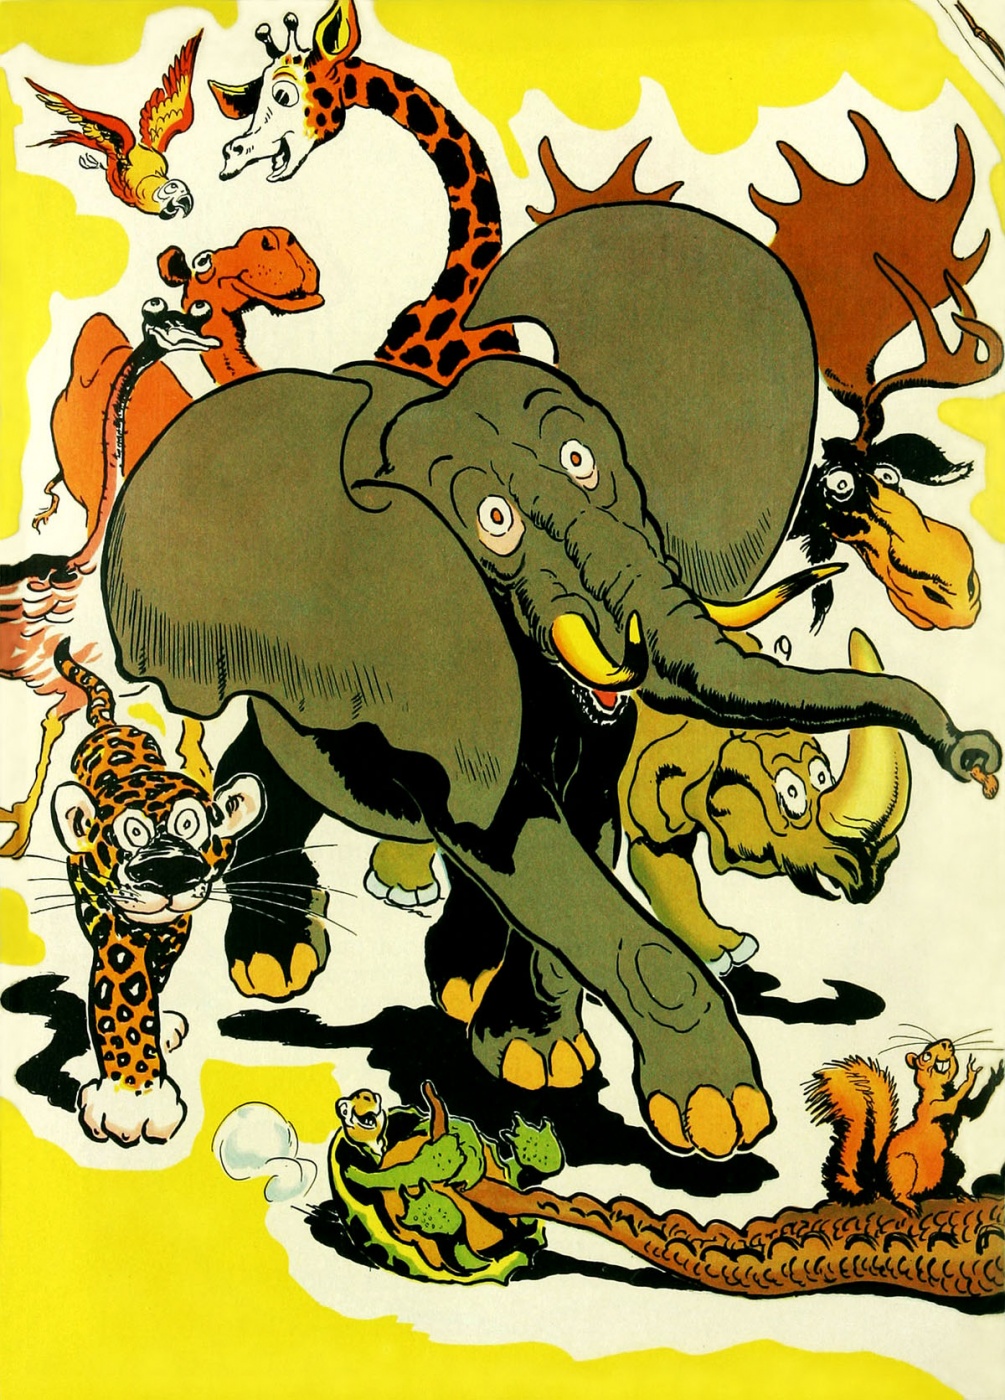 Funny Animal Comics (68)